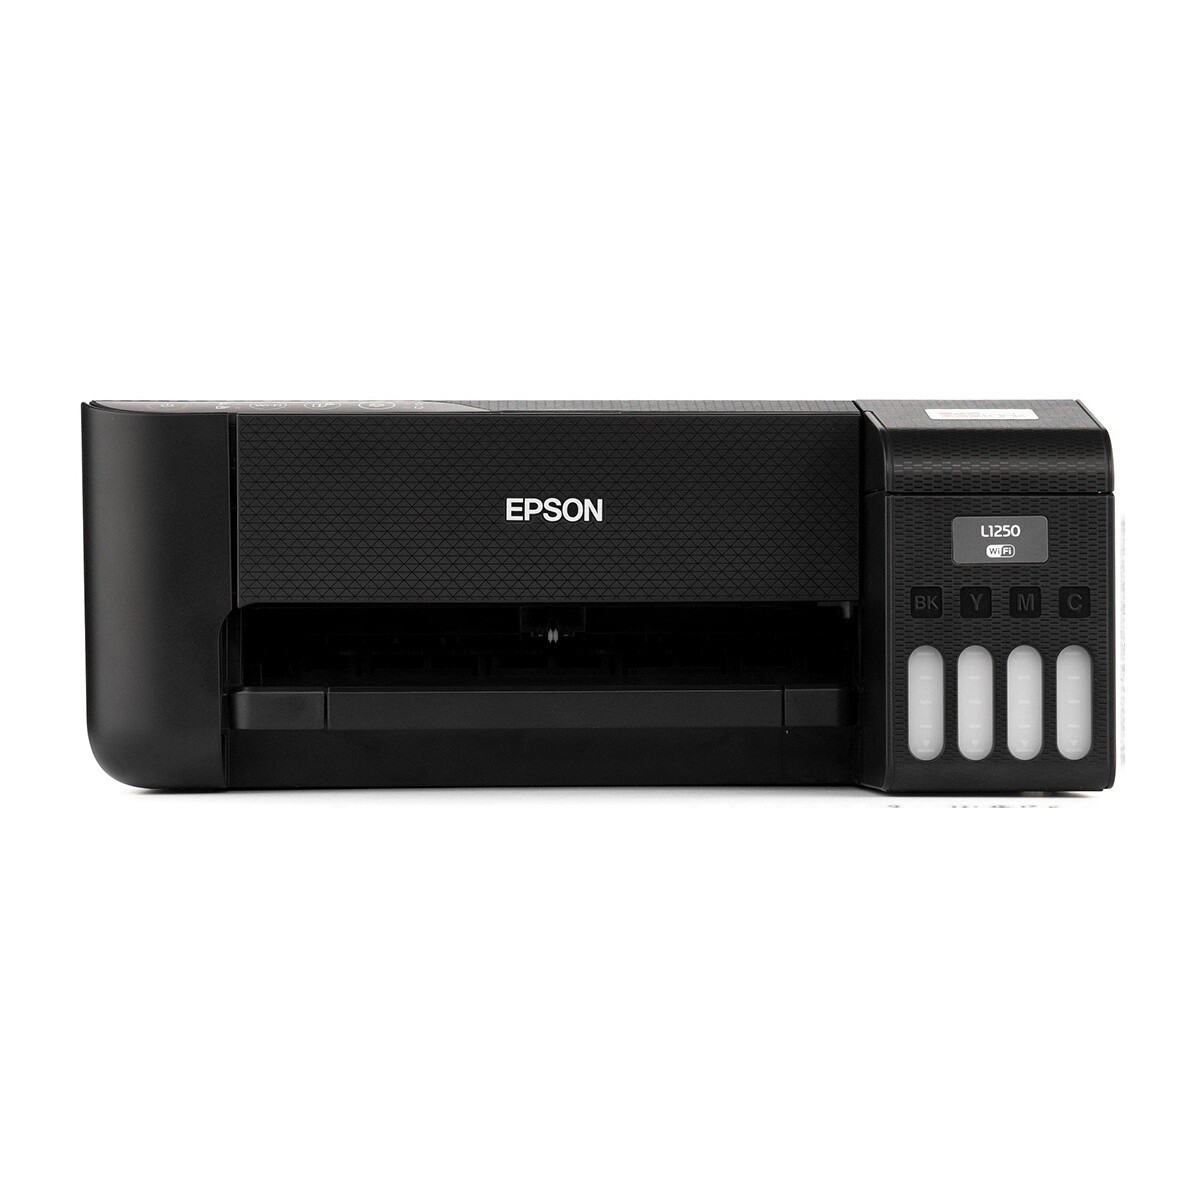 Impresora Epson EcoTank L1250 Inalámbrica Wi-Fi + 4 Tintas Negro